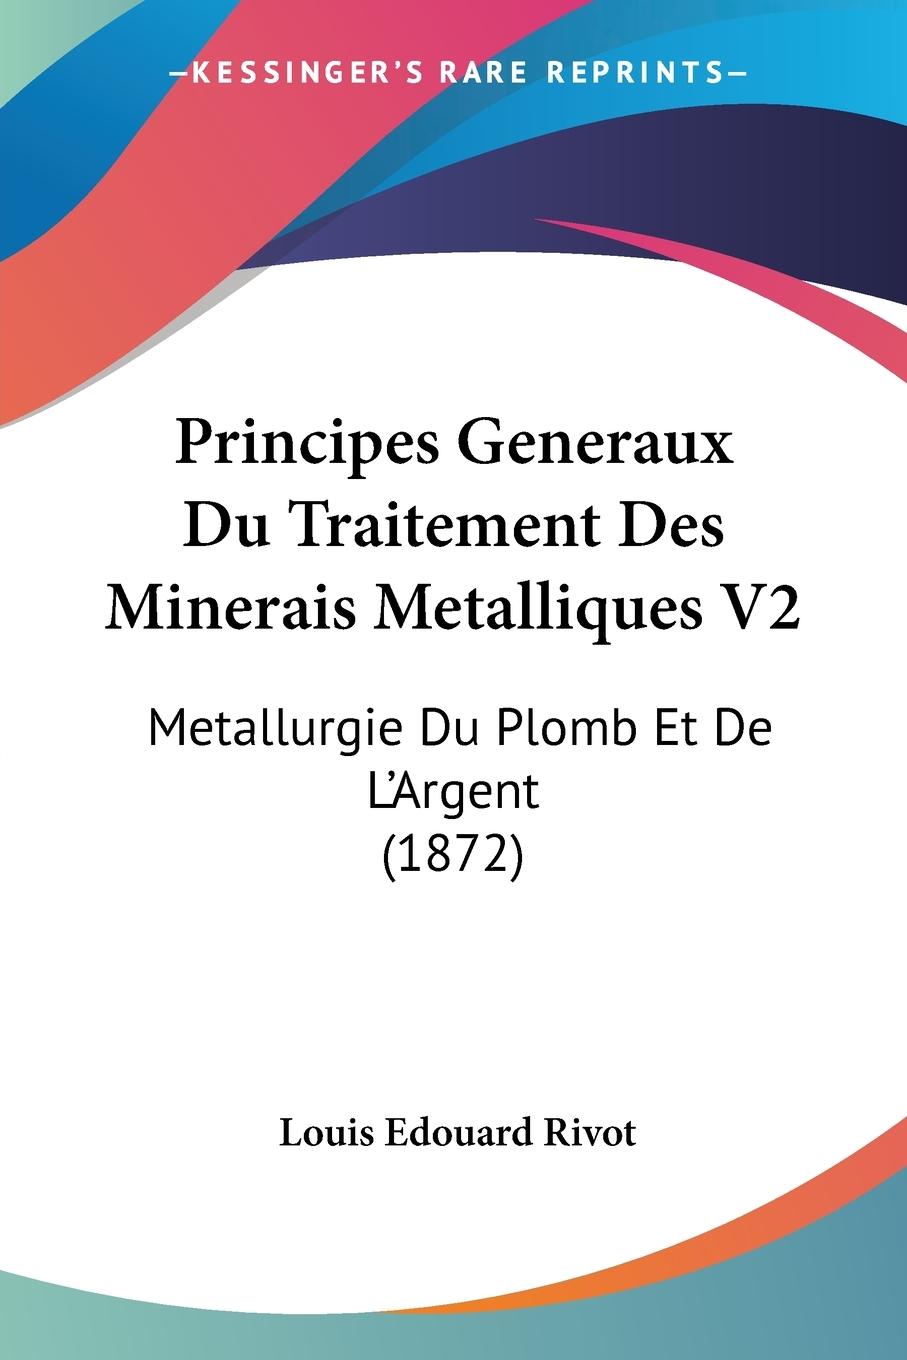 Principes Generaux Du Traitement Des Minerais Metalliques V2 - Rivot, Louis Edouard